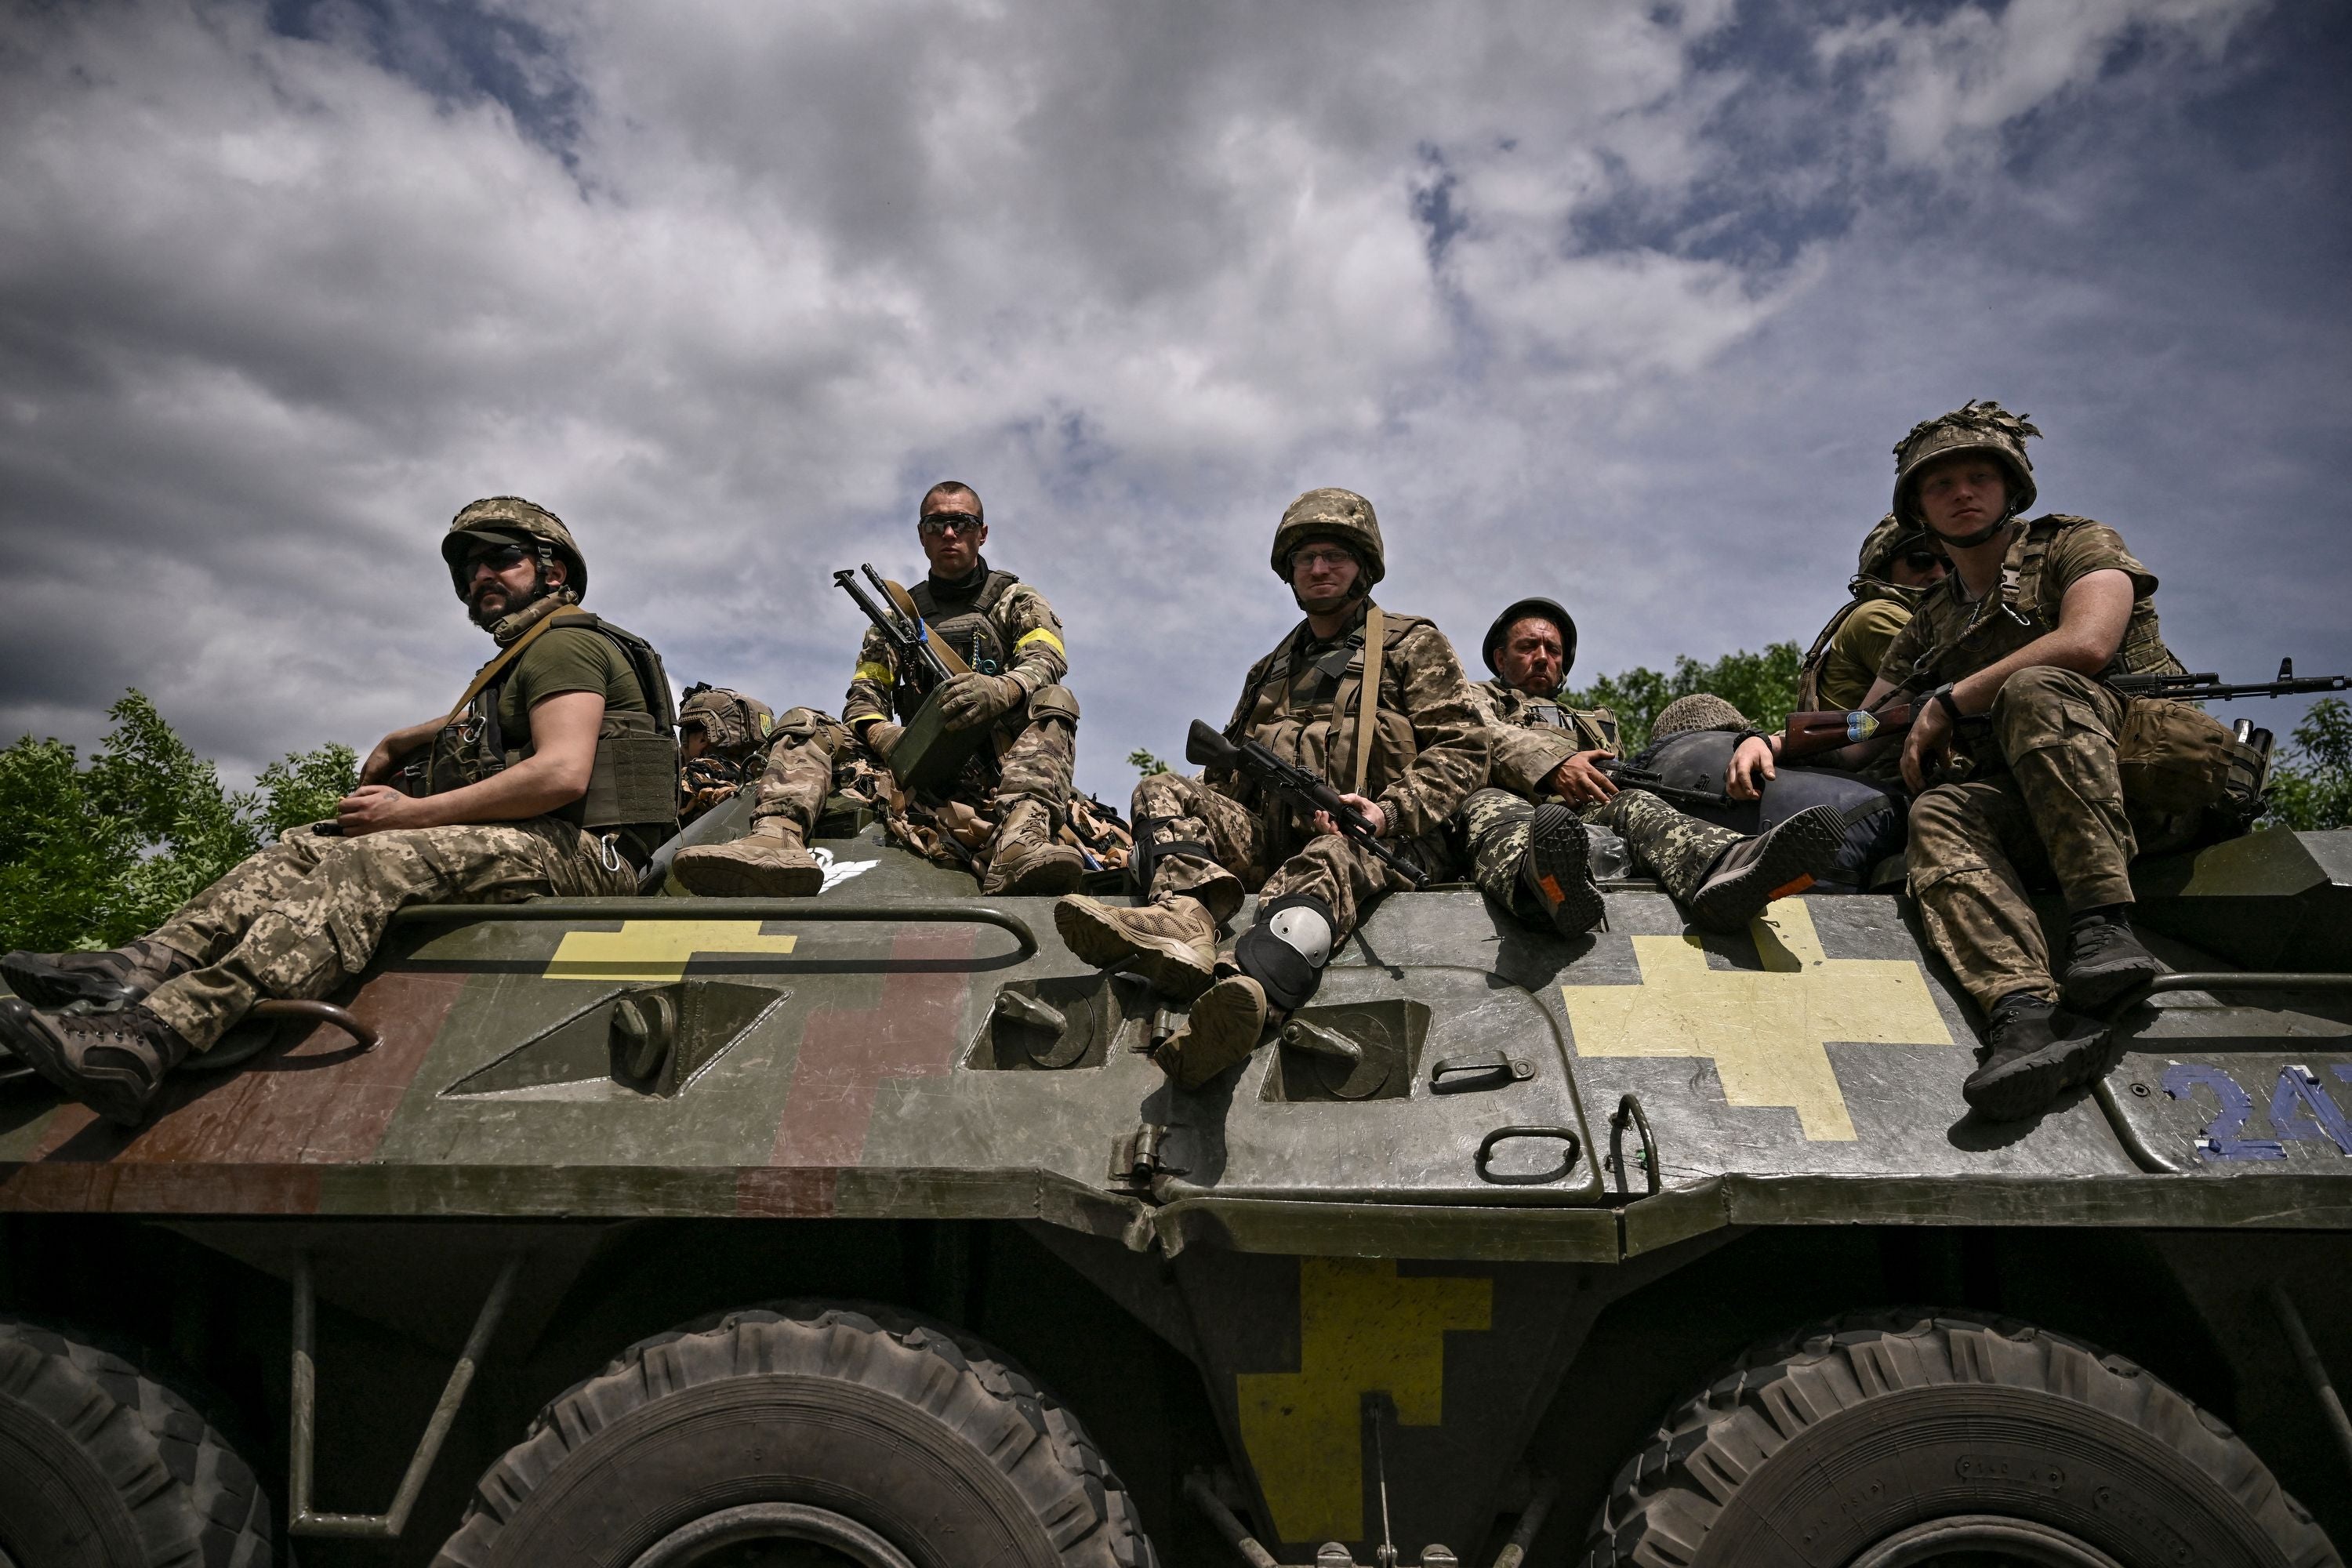 Tropas ucranianan sentadas sobre un vehículo blindado mientras regresan del frente cerca de la ciudad de Slovyansk, en el Donbas